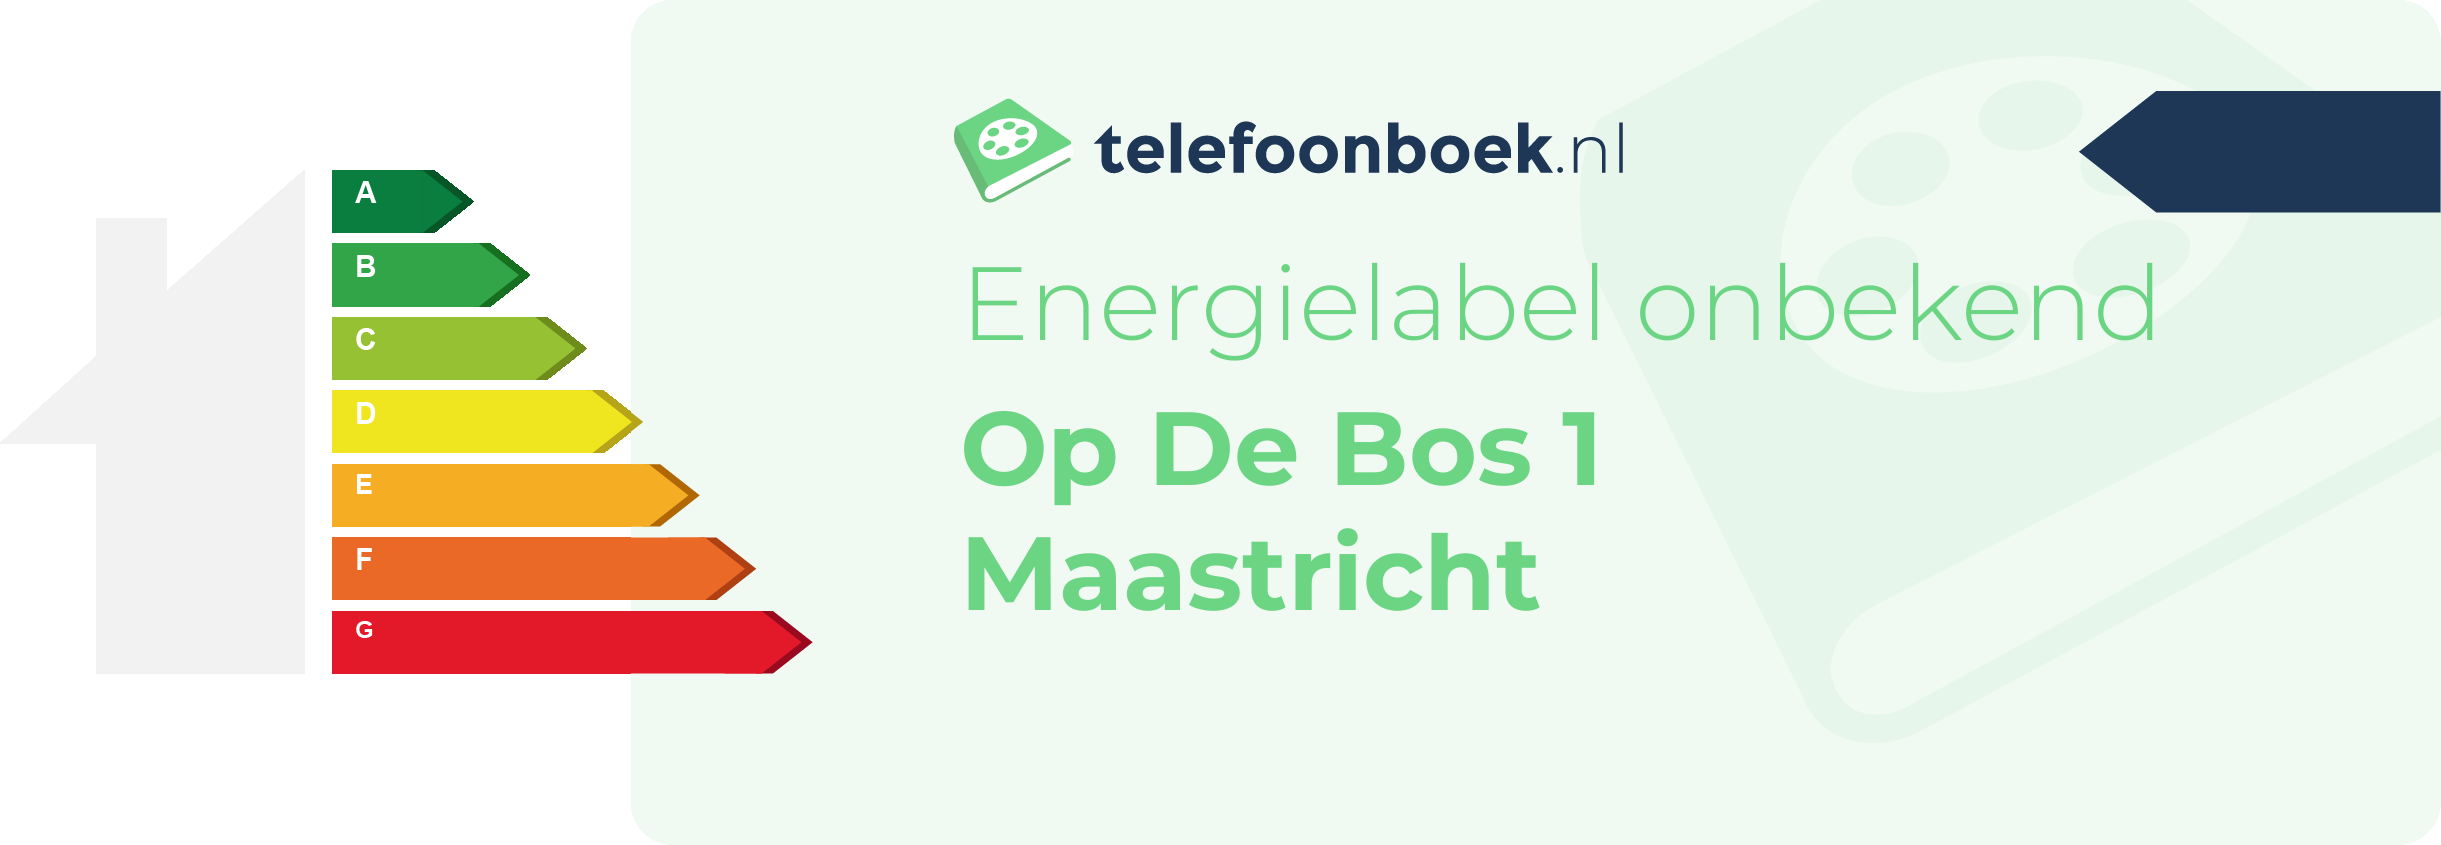 Energielabel Op De Bos 1 Maastricht